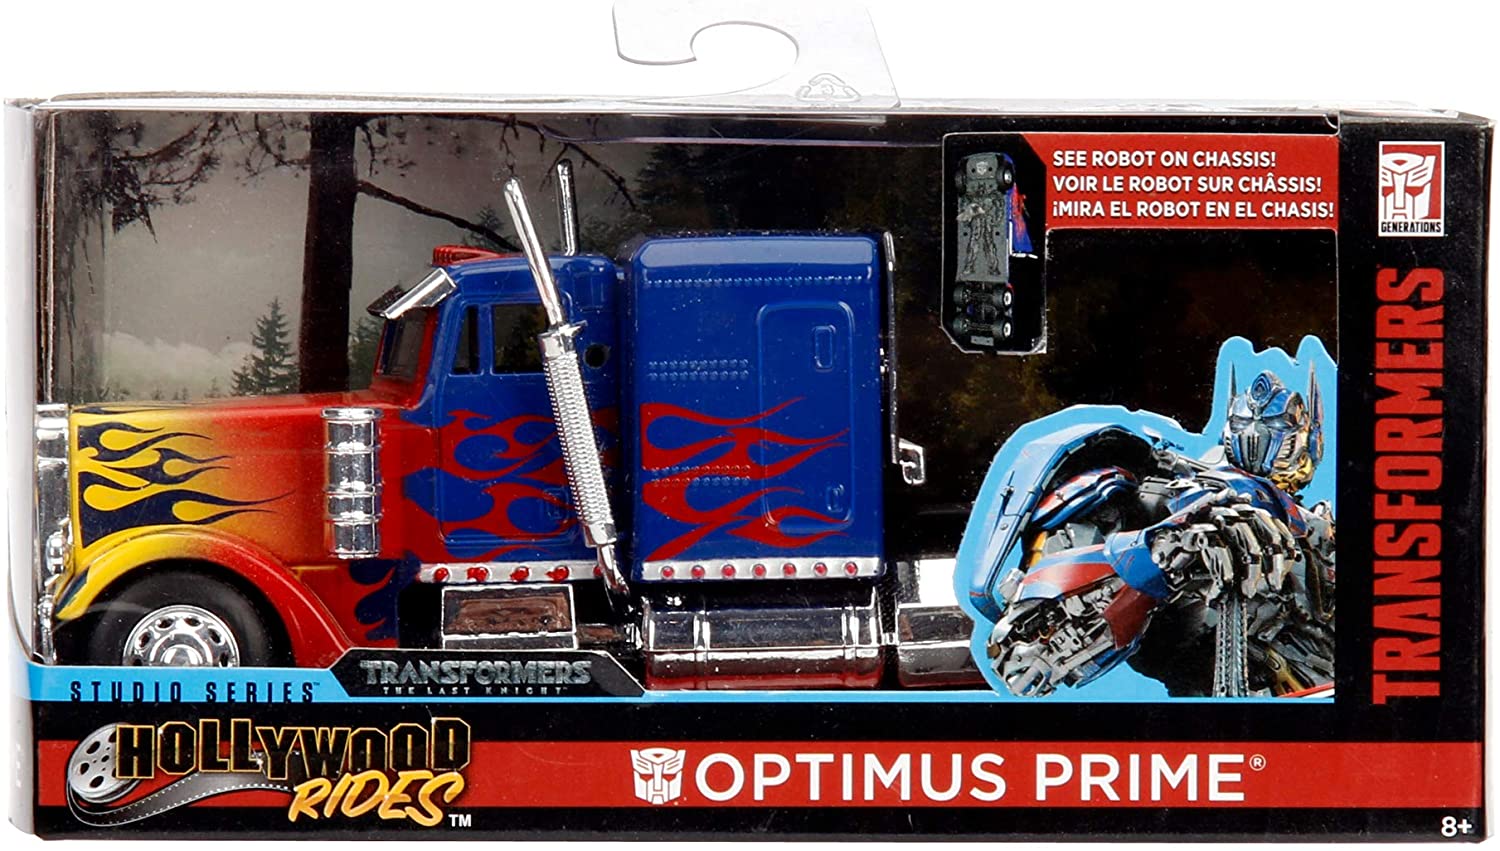 Transformers T1 Optimus Prime 1 32